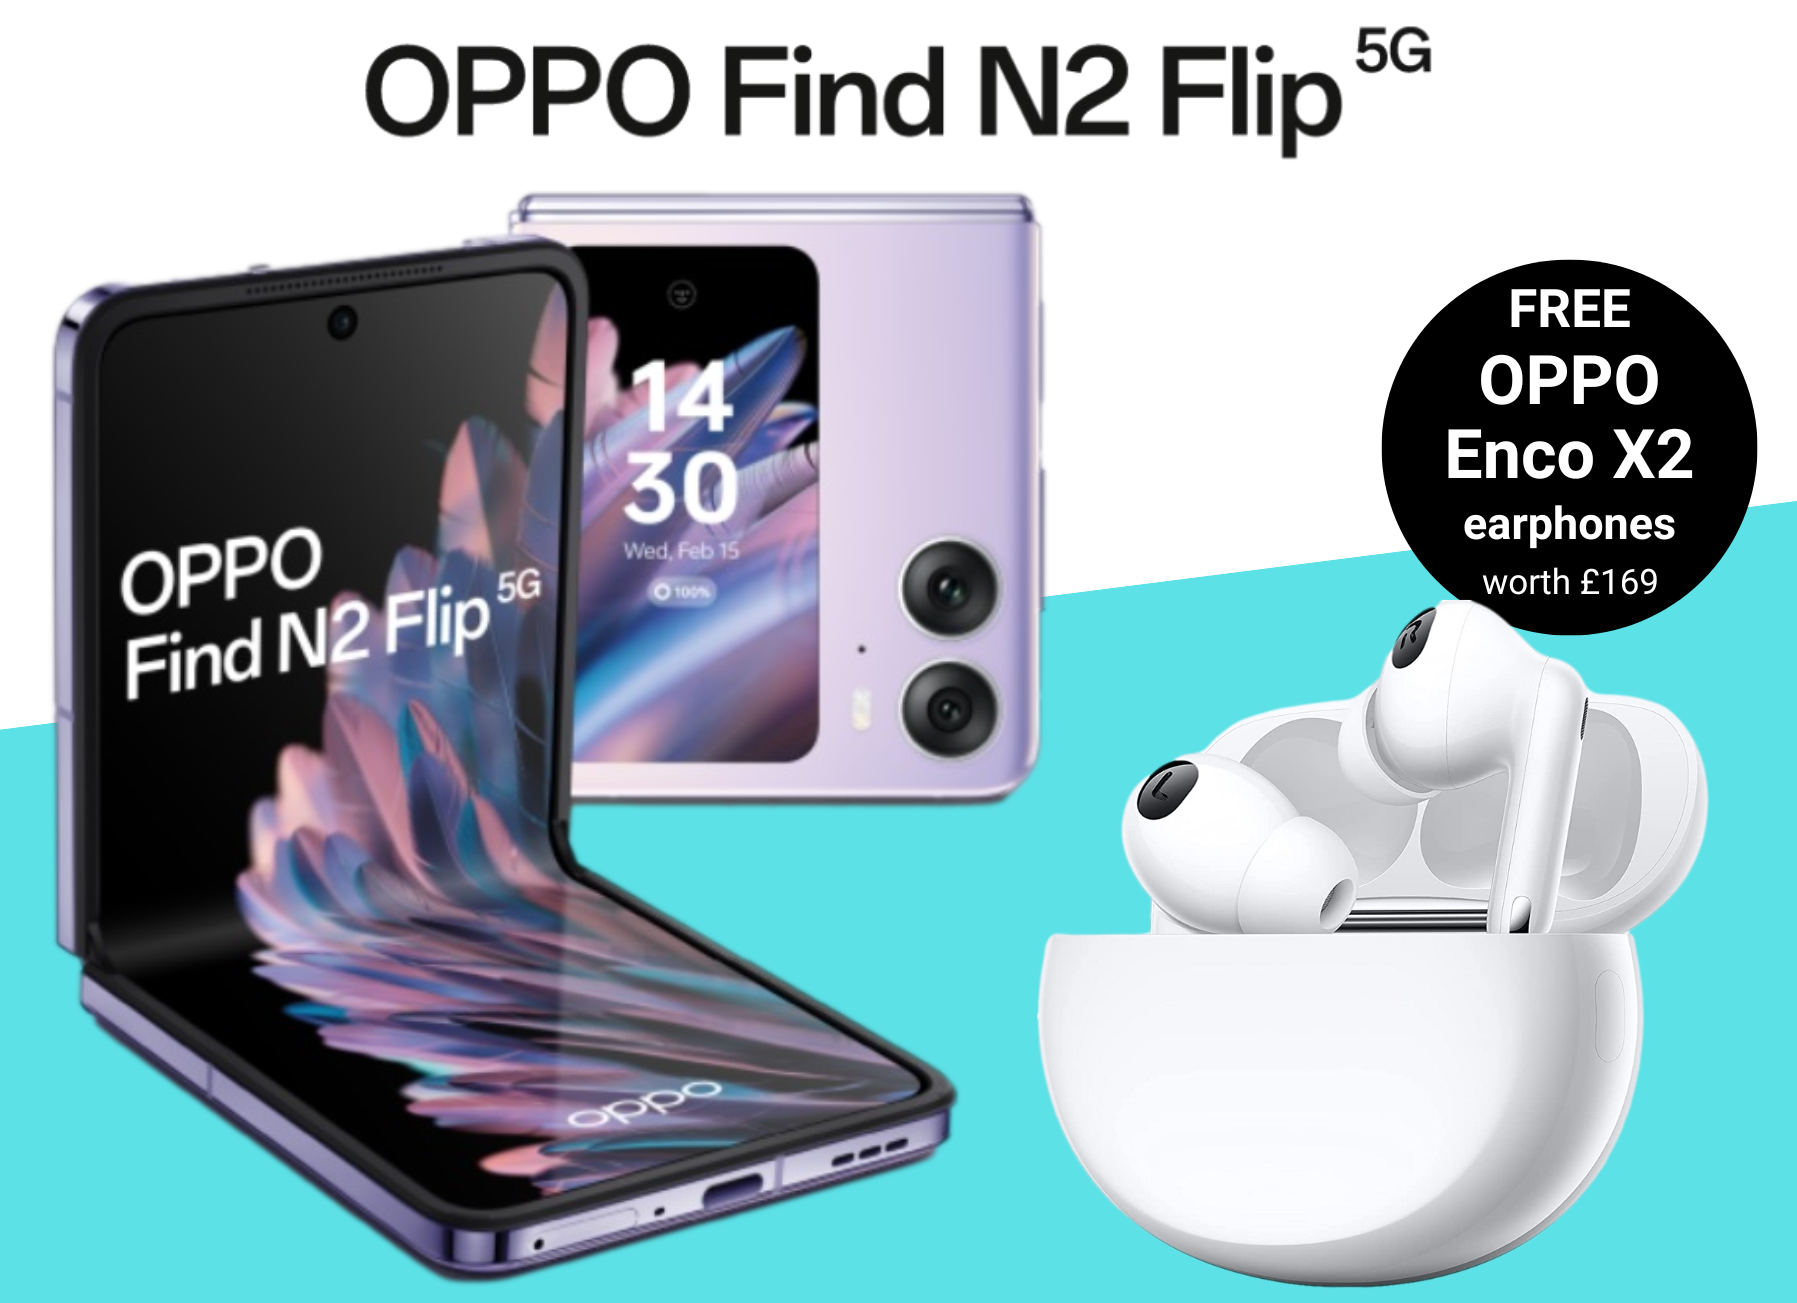 OPPO Find N2 Flip Deals with Free OPPO Enco X2 Earphones